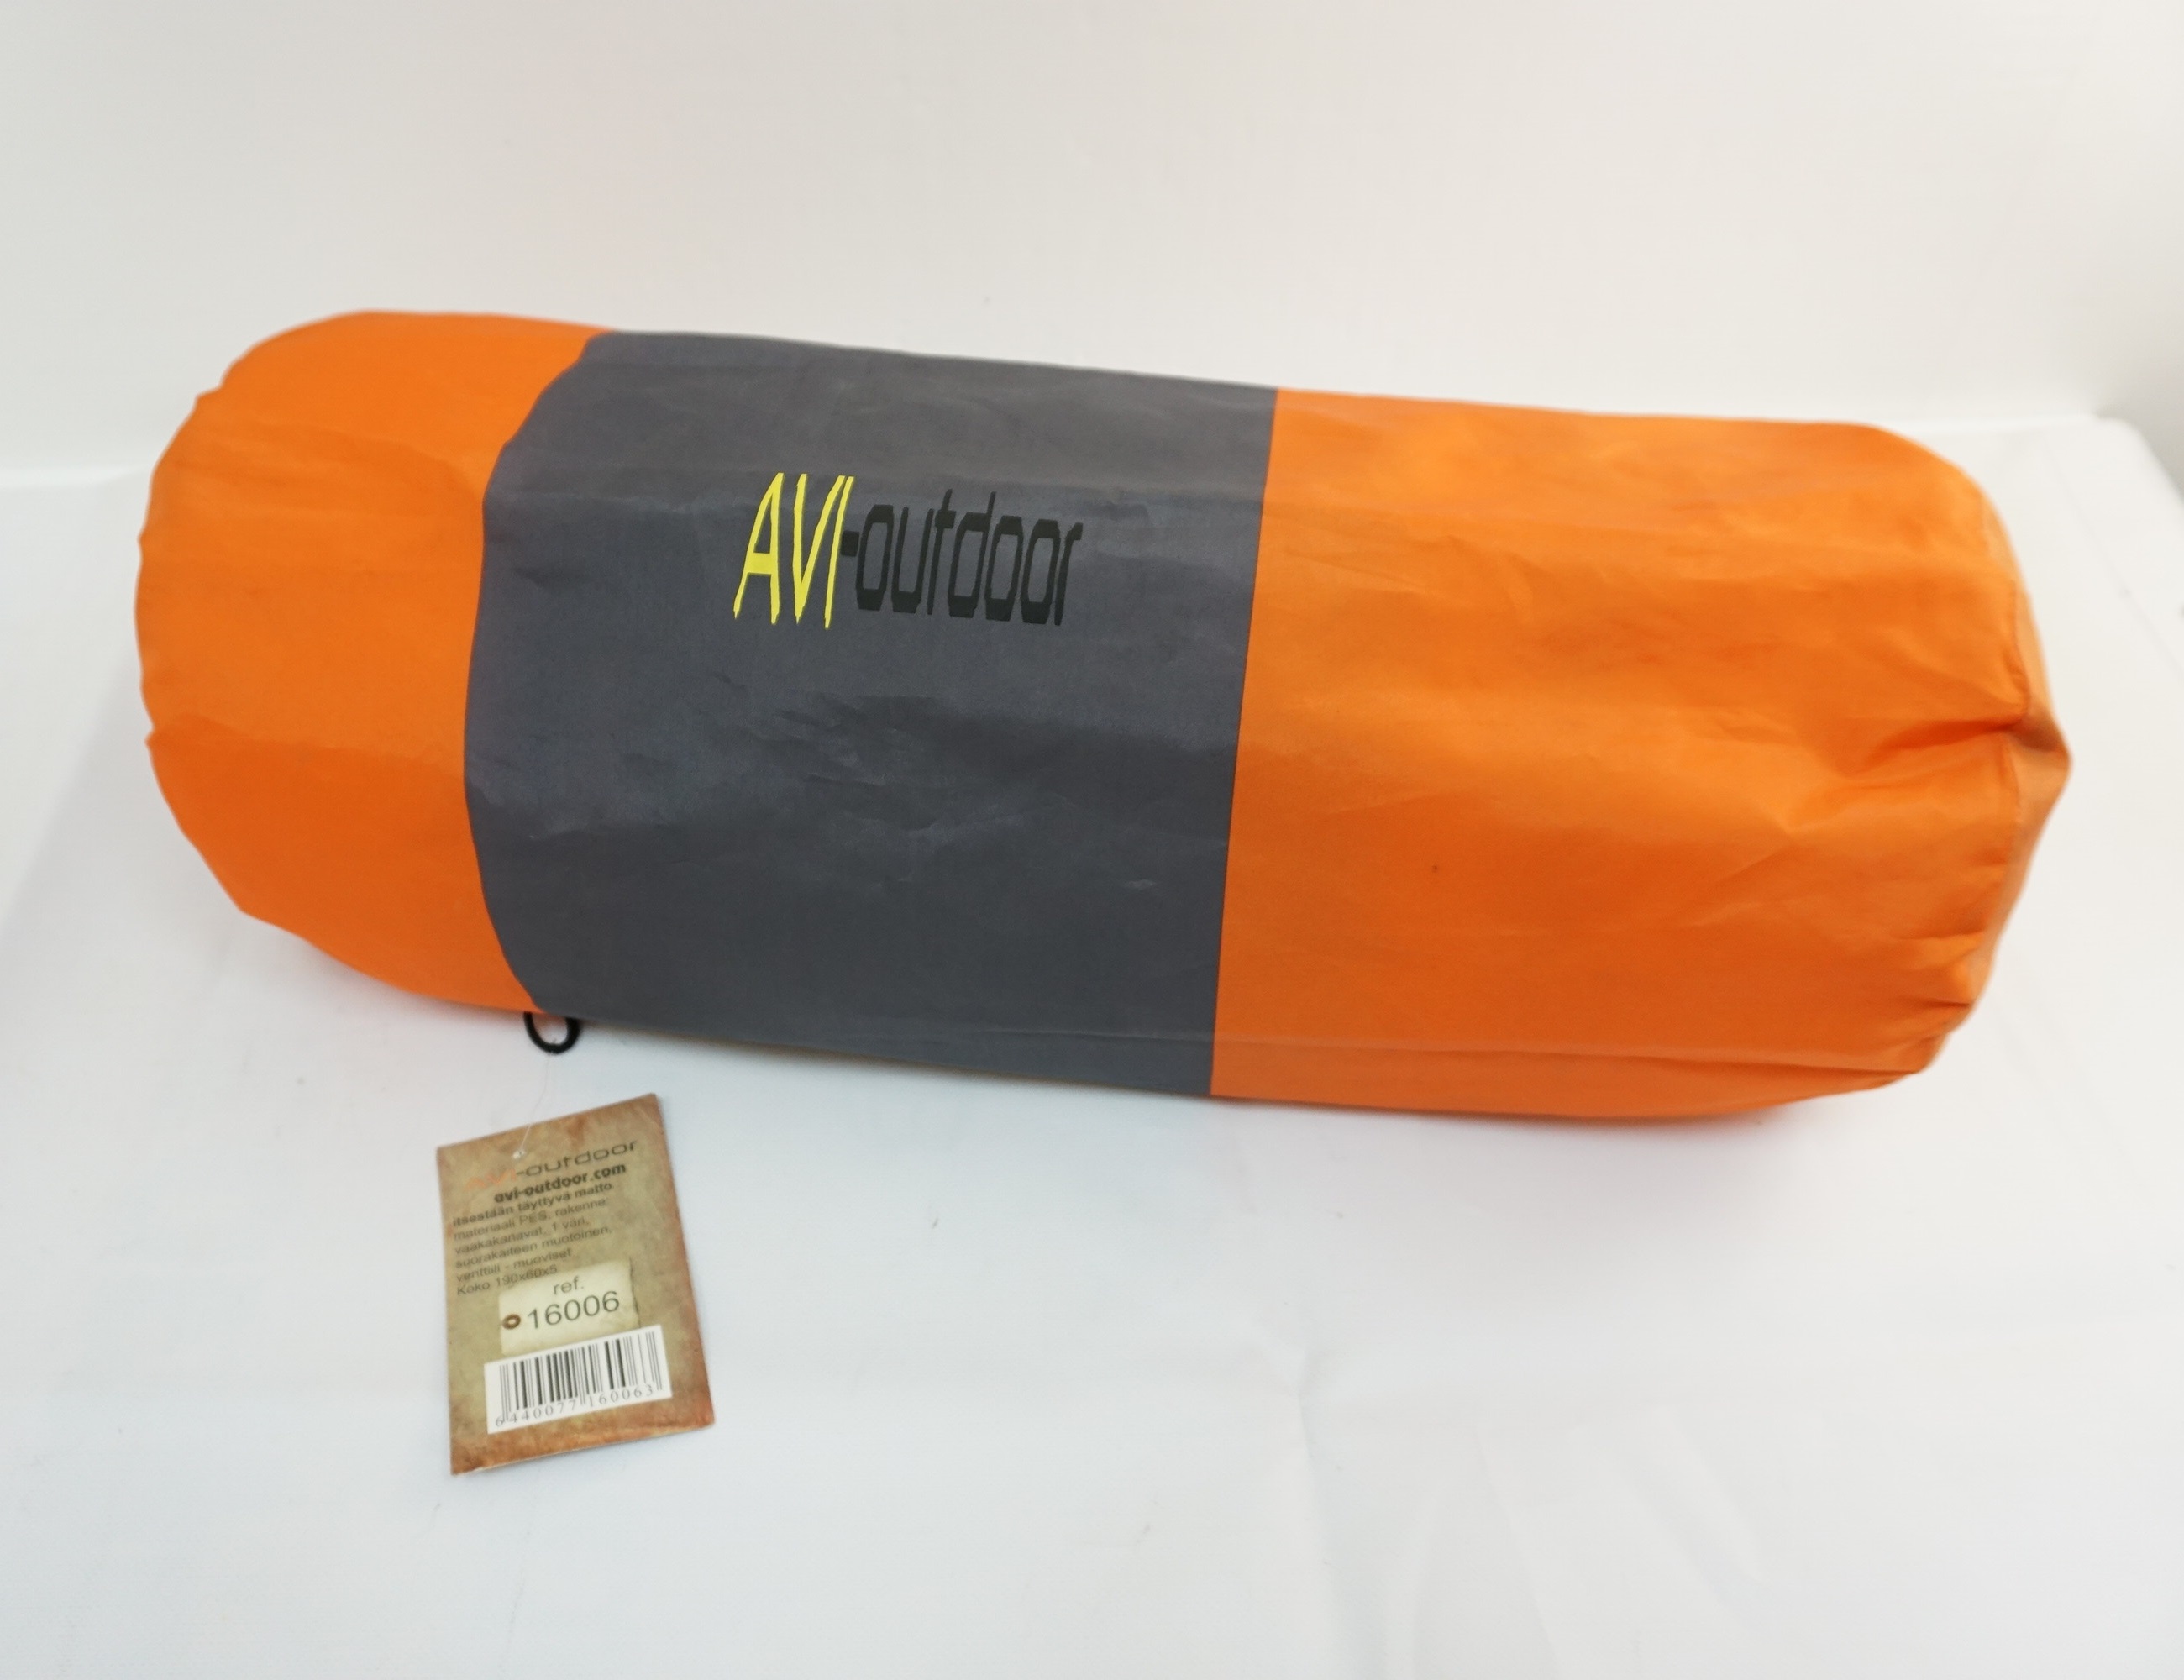 Коврик самонадувающийся AVI-Outdoor, 190x60 см, оранжевый (16006)